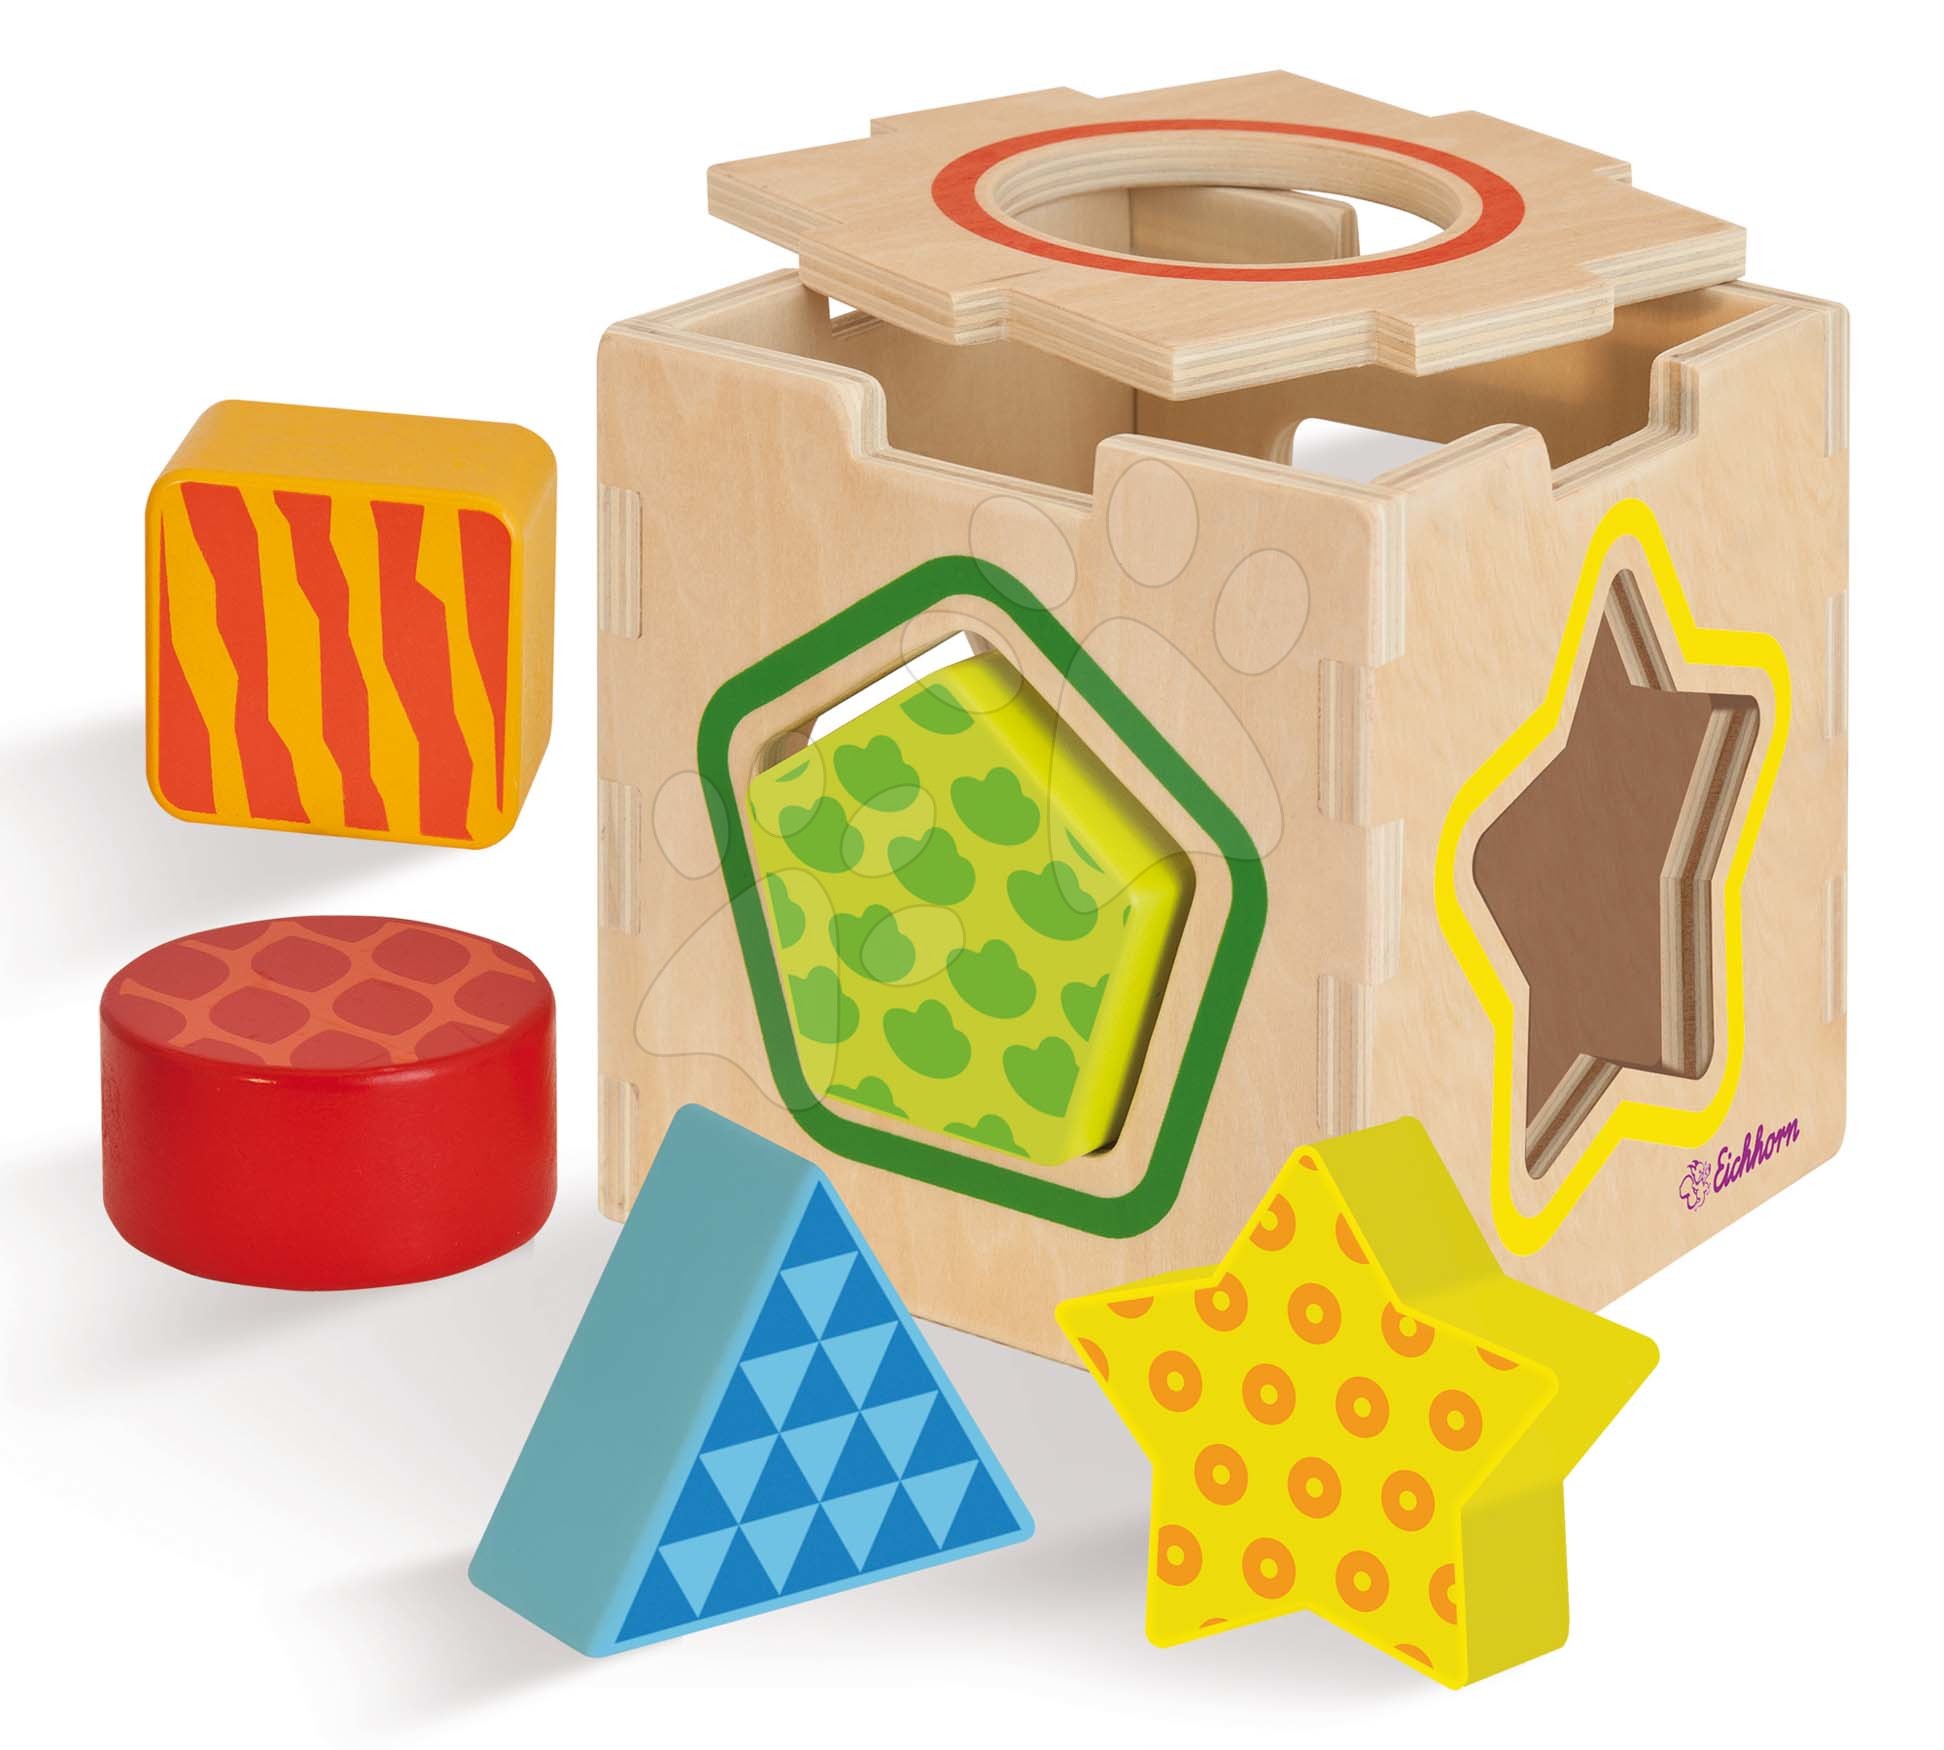 Dřevěná didaktická kostka Color Shape Sorting Box Eichhorn s 5 vkládacími tvary od 12 měsíců